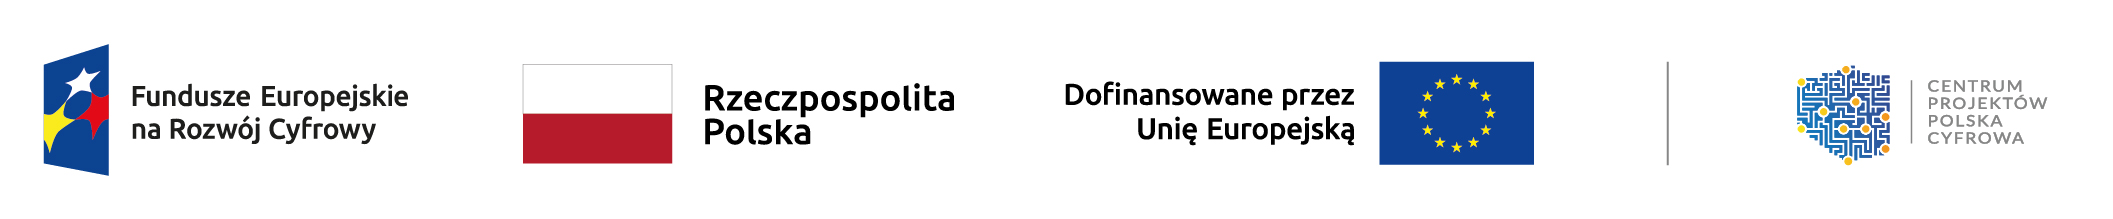 Logotypy: Fundusze Europejskie na Rozwój Cyfrowy, Rzeczpospolita Polska, Unia Europejska, Centrum Projektów Polska Cyfrowa